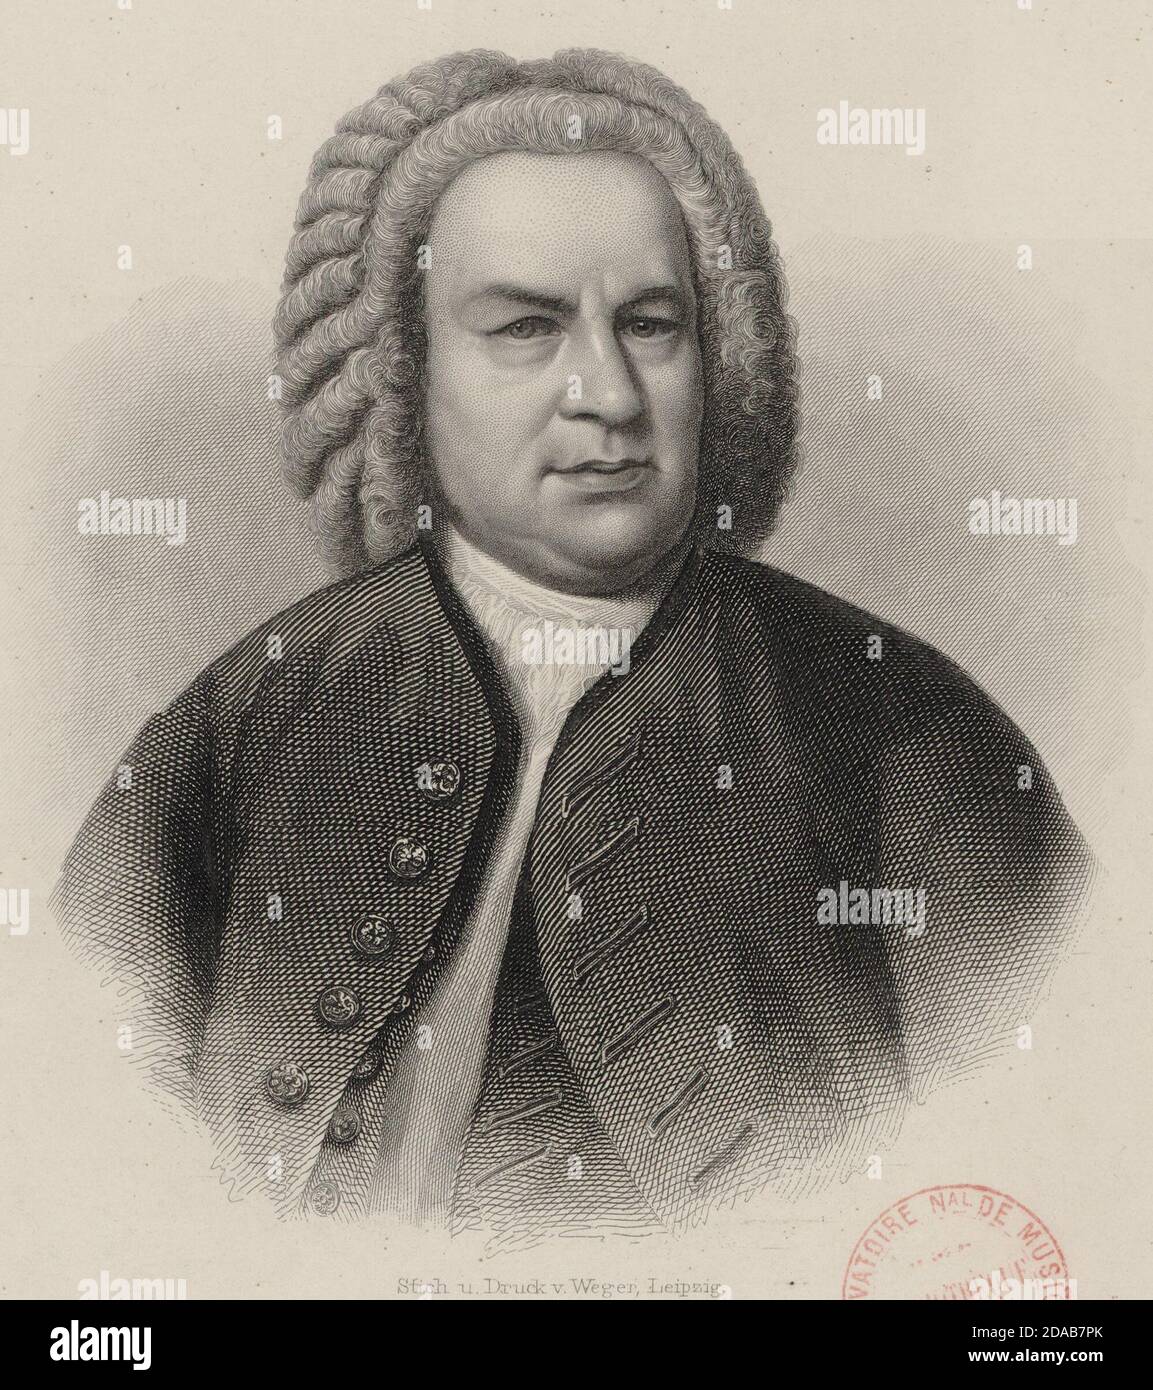 Title: Portrait of Johann Sebastian Bach Creator: August Weger Date:  c.1870 Medium: engraving Location: Bibliotheque du Conservatoire de Musique, Paris Stock Photo